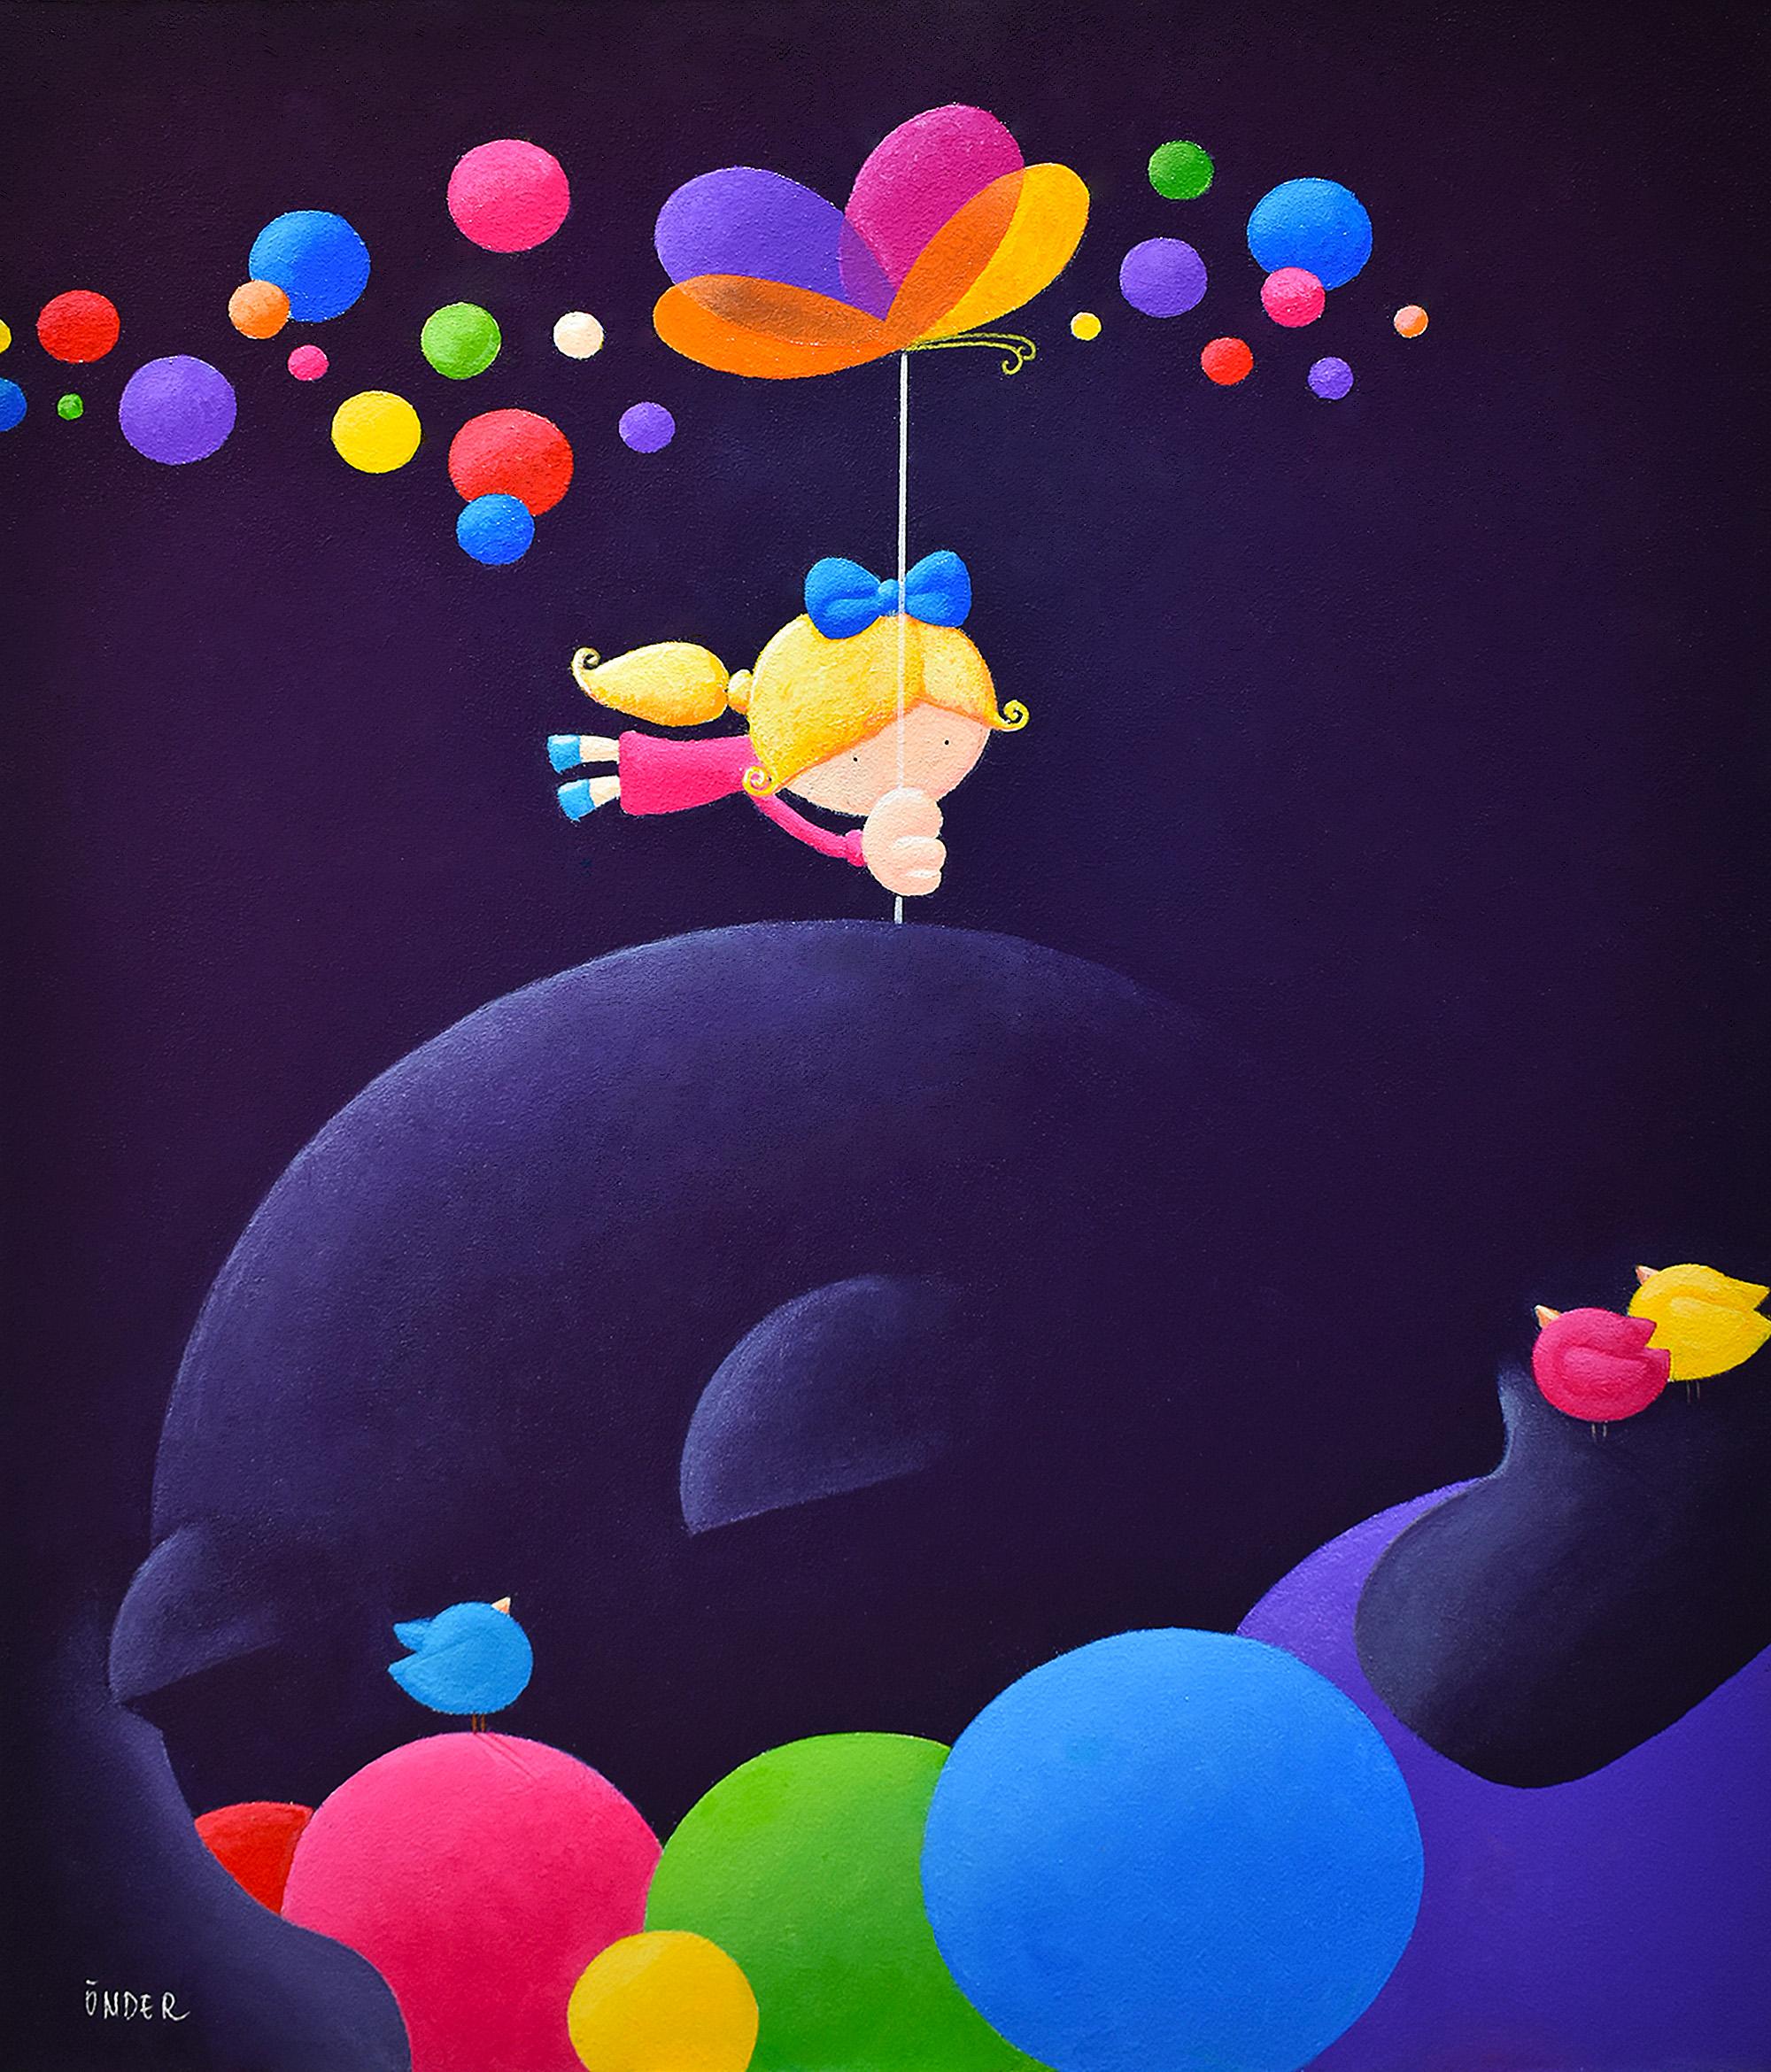 Mali Onder Animal Painting – Ich bin glücklich, bunte Pop-Art, Träume von Kindern, Freiheit, Glück